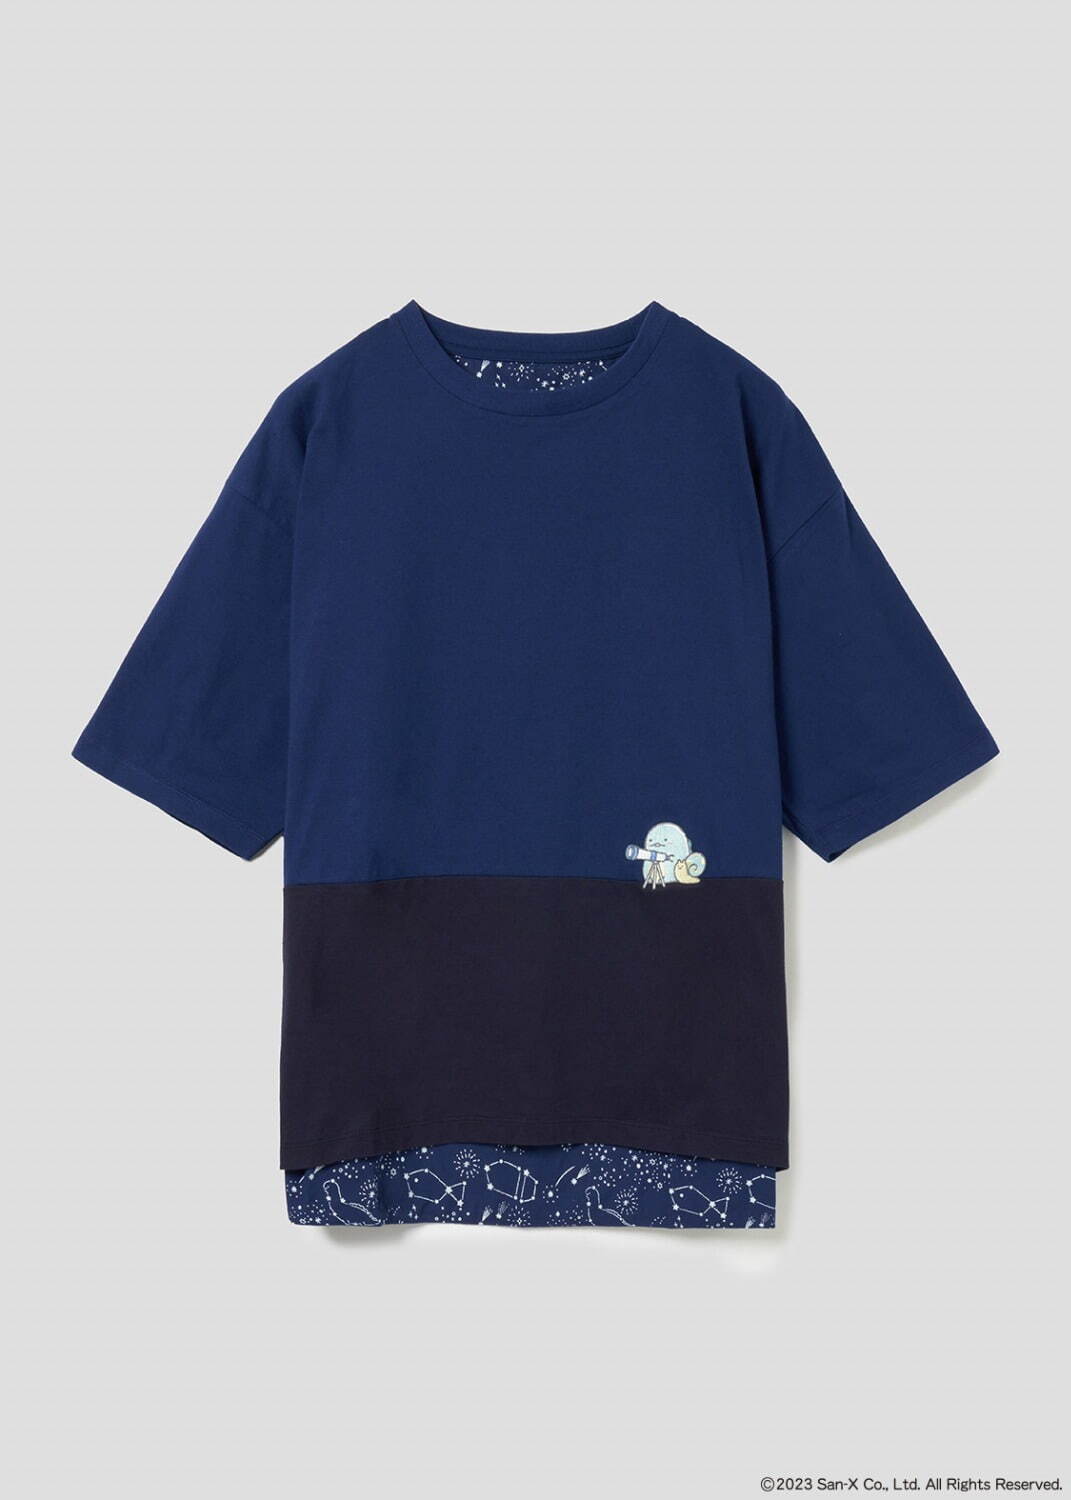 ビッグシルエット5分袖Tシャツ「星空さんぽ」4,500円